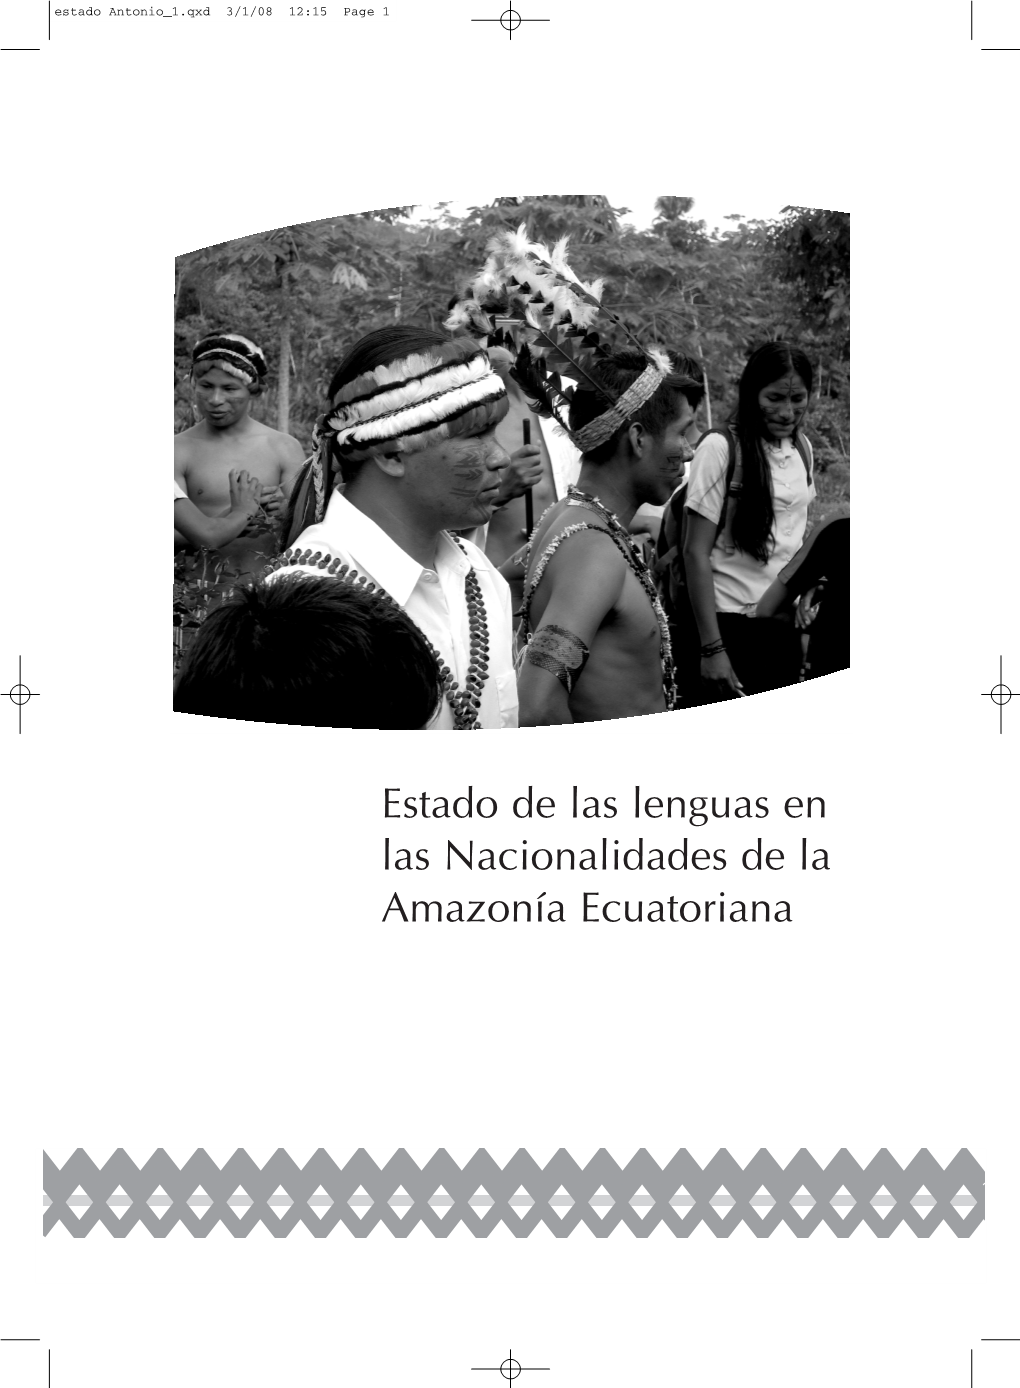 Estado De Las Lenguas En Las Nacionalidades De La Amazonía Ecuatoriana Estado Antonio 1.Qxd 3/1/08 12:15 Page 2